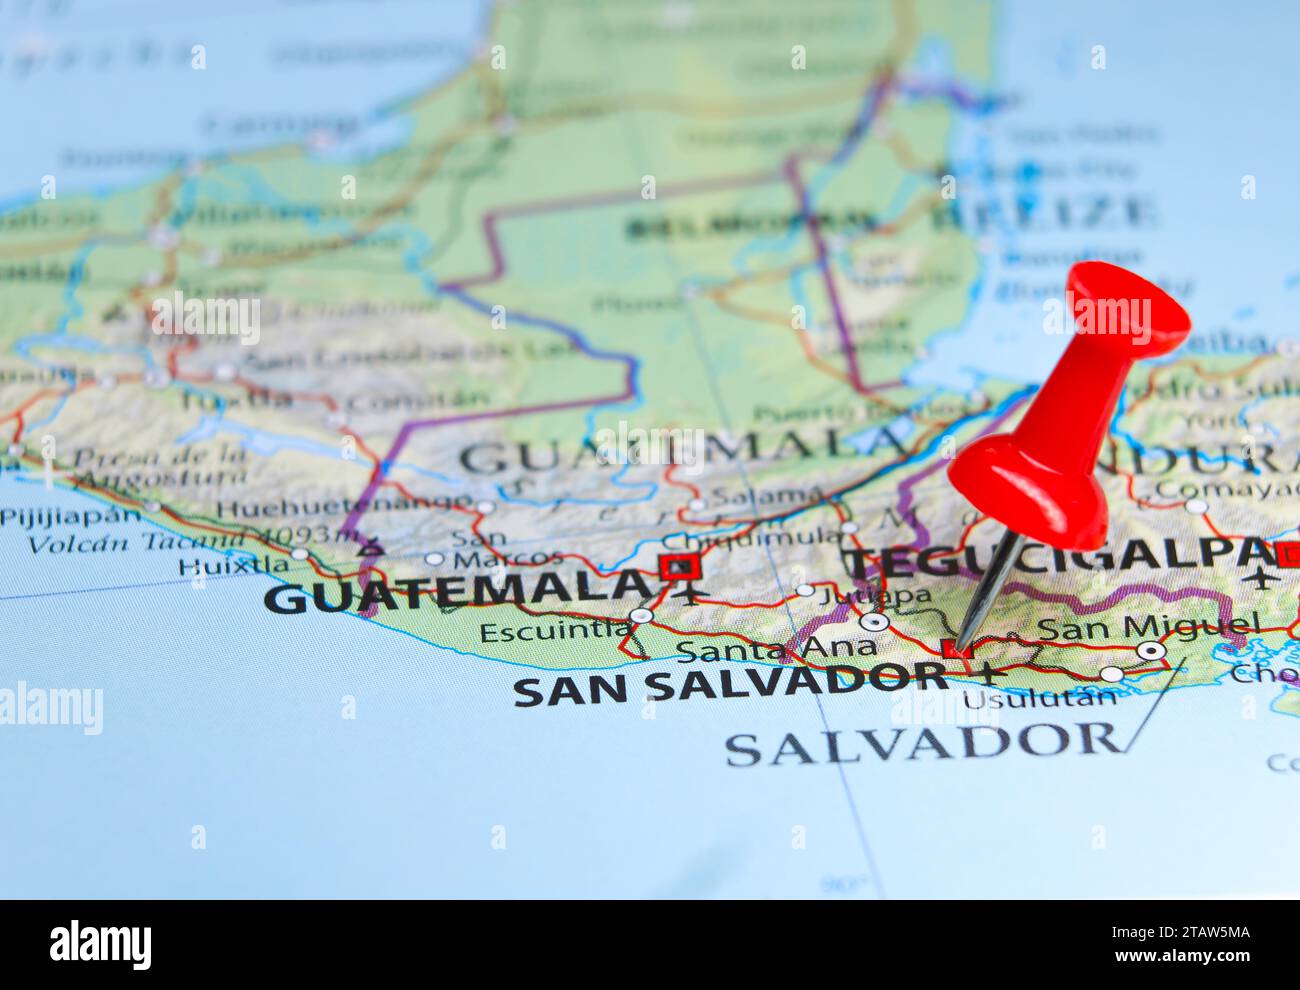 San Salvador pin on map Stock Photo